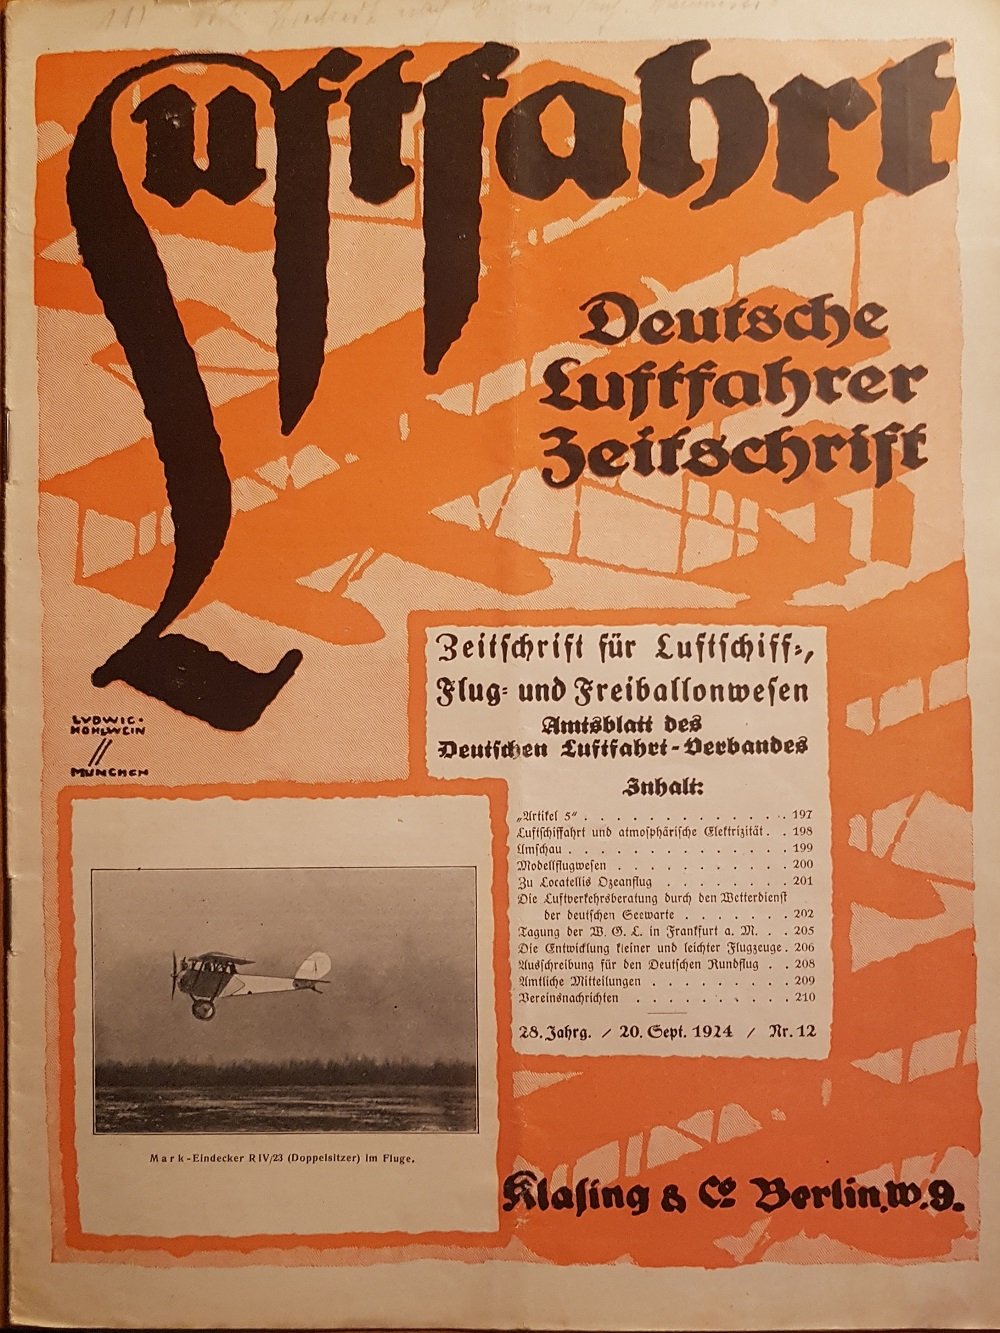 PETSCHOW, Robert (Schriftleiter):  Luftfahrt. Deutsche Luftfahrer Zeitschrift. Nr. 12, 20. Sept. 1924. Zeitschrift für Luftschiff-, Flug- und Freiballonwesen. Amtsblatt des Deutschen Luftfahrt-Verbandes. 